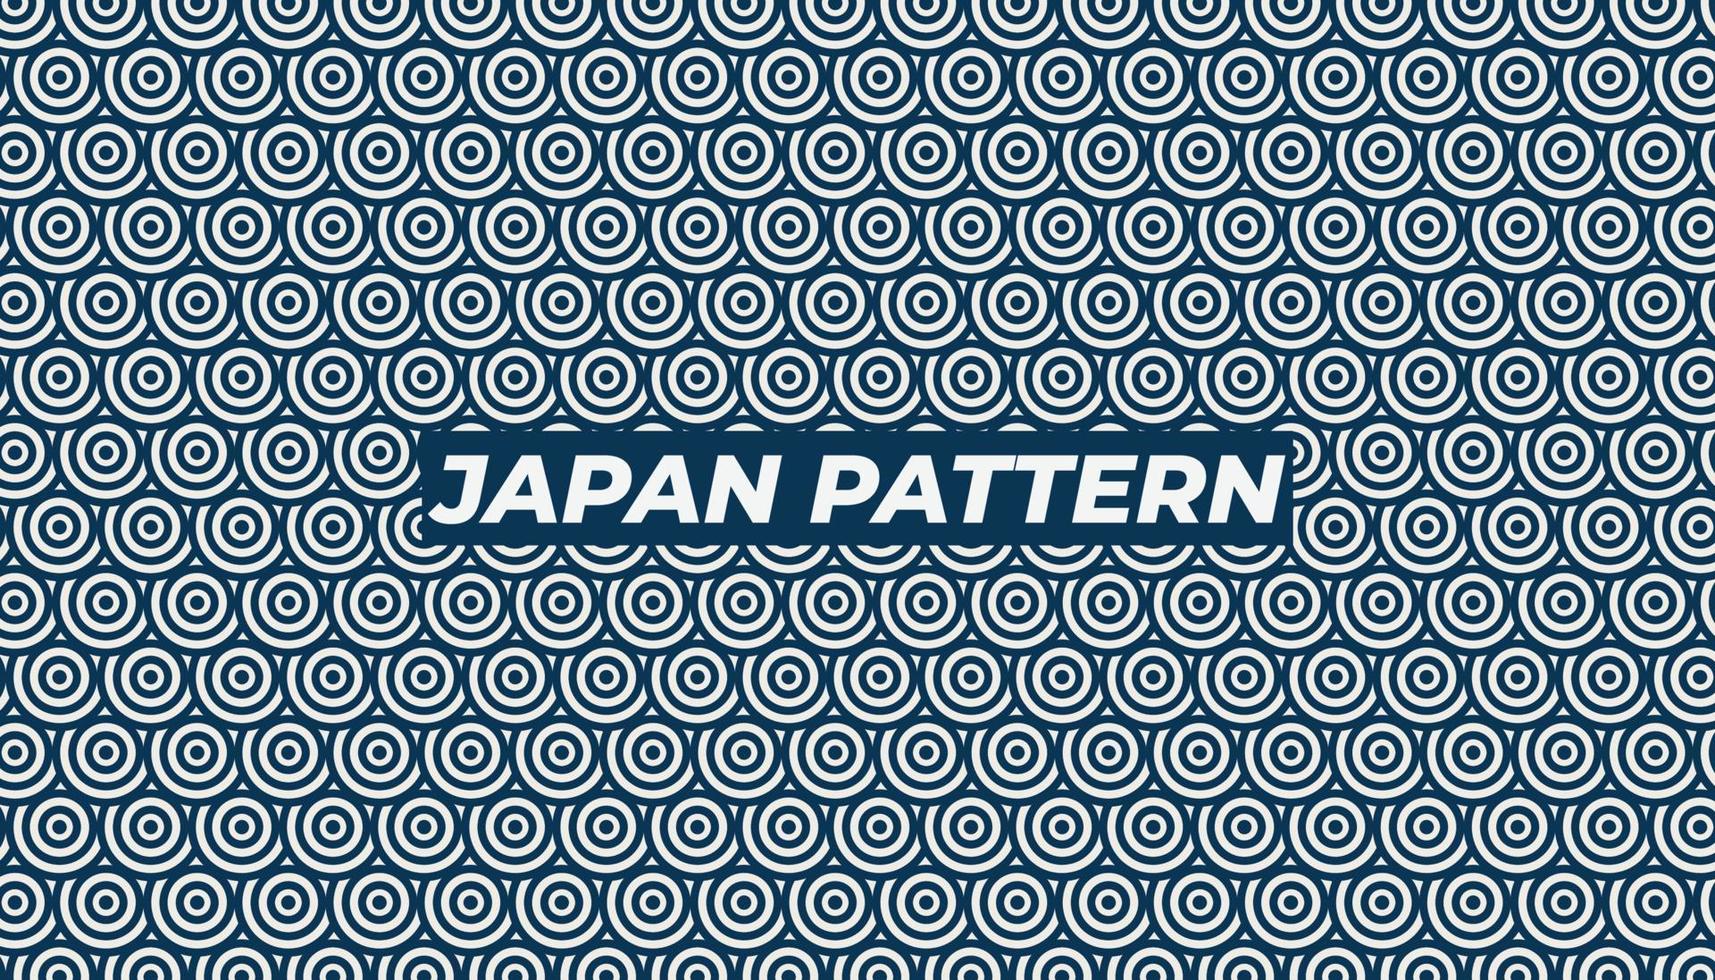 ilustración fondo jappan patern azul color vector